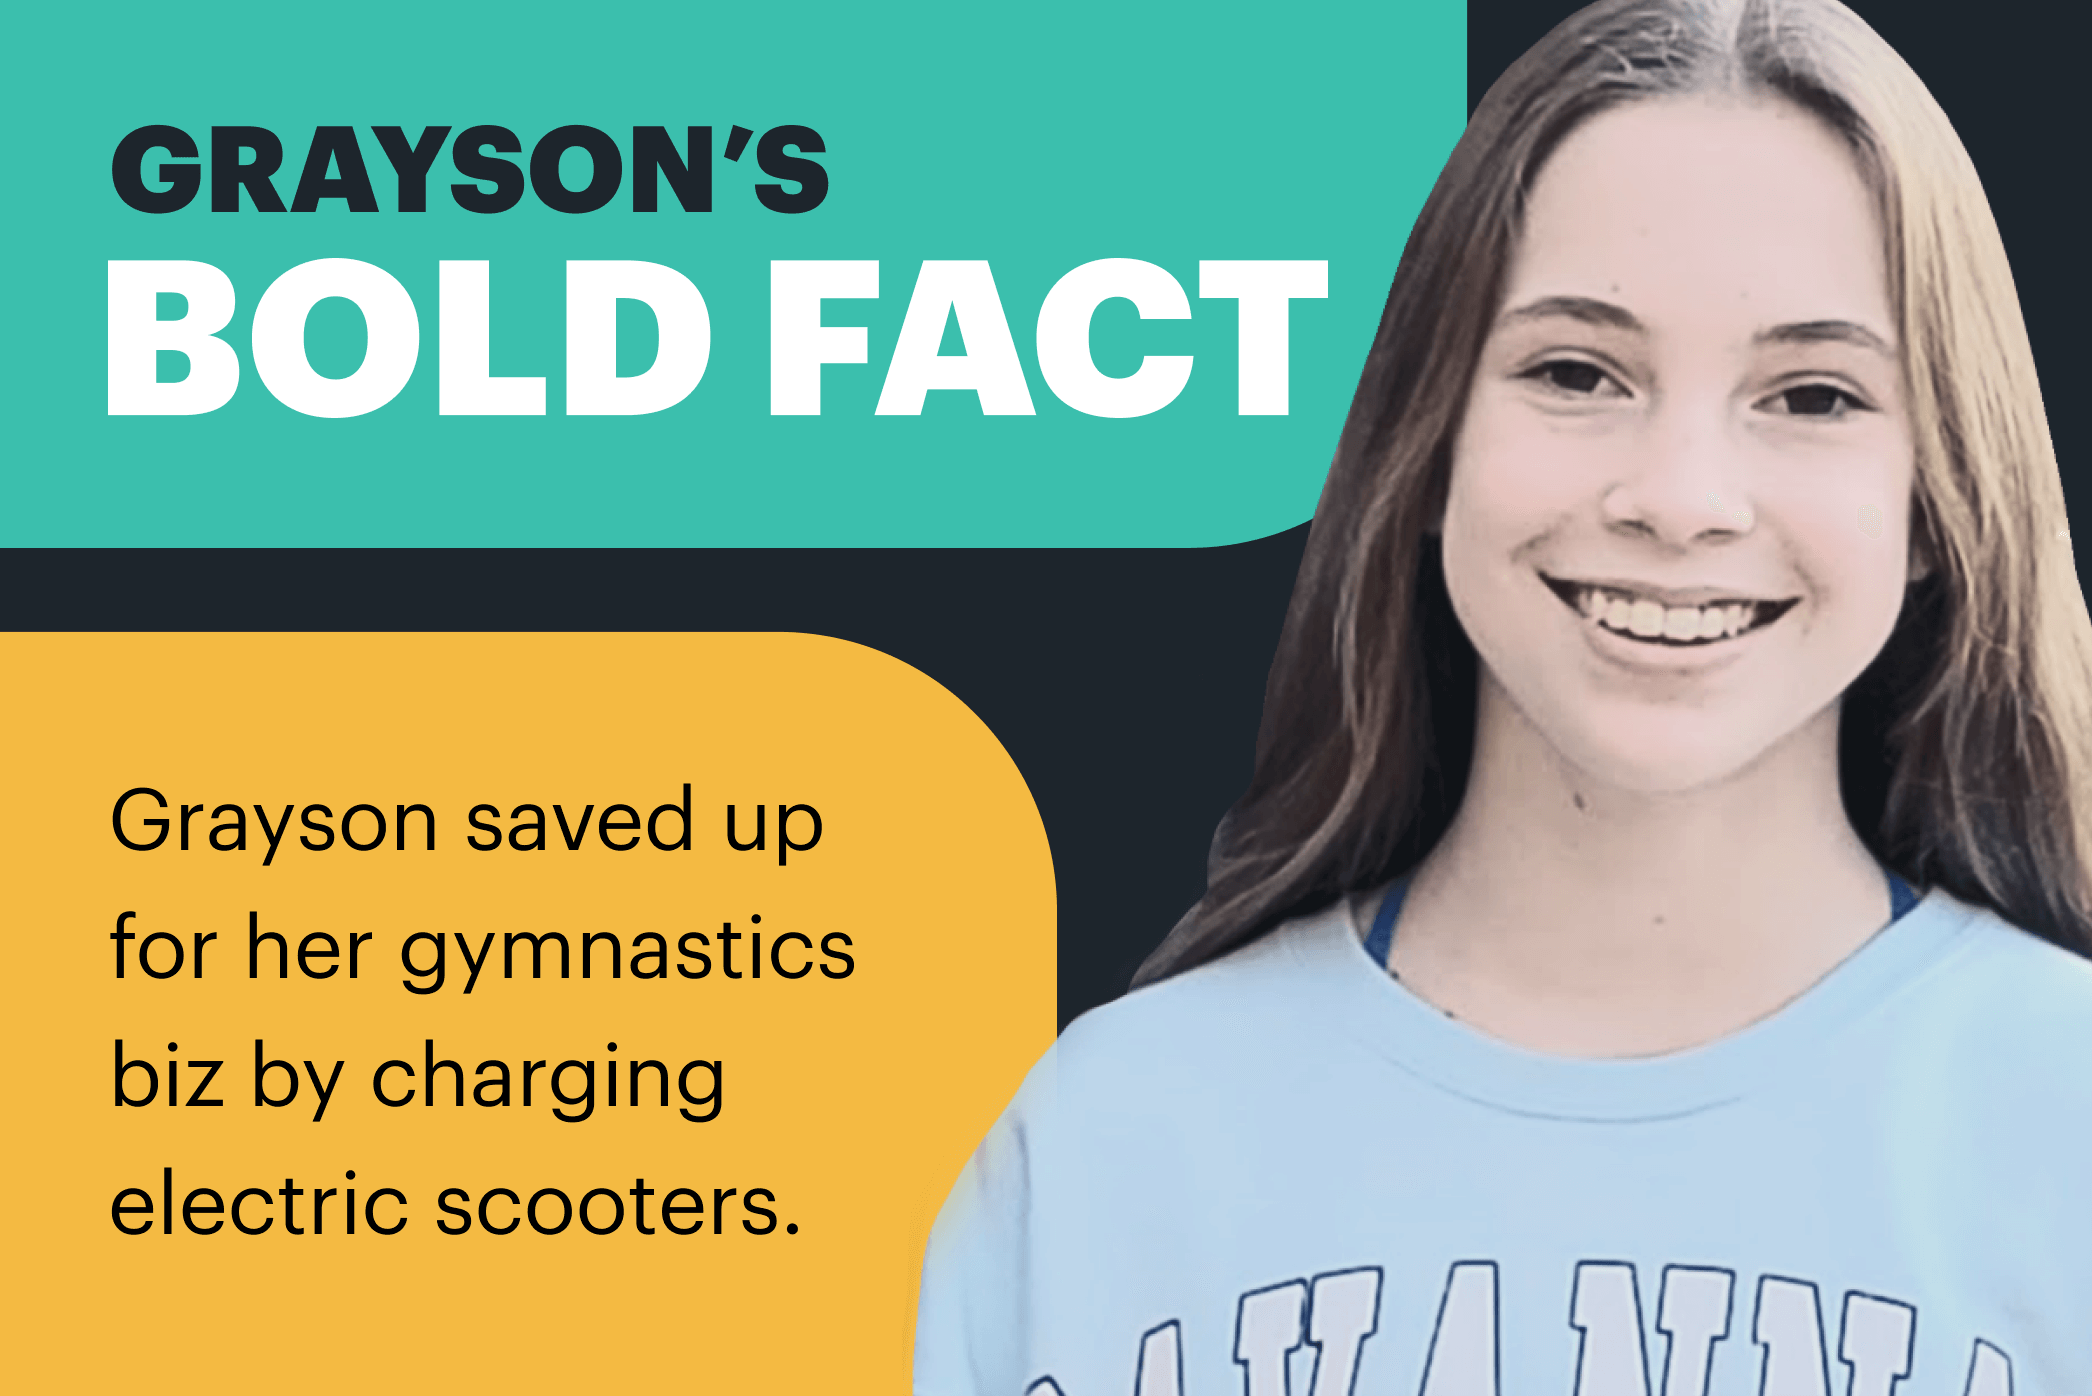 Grayson's bold fact